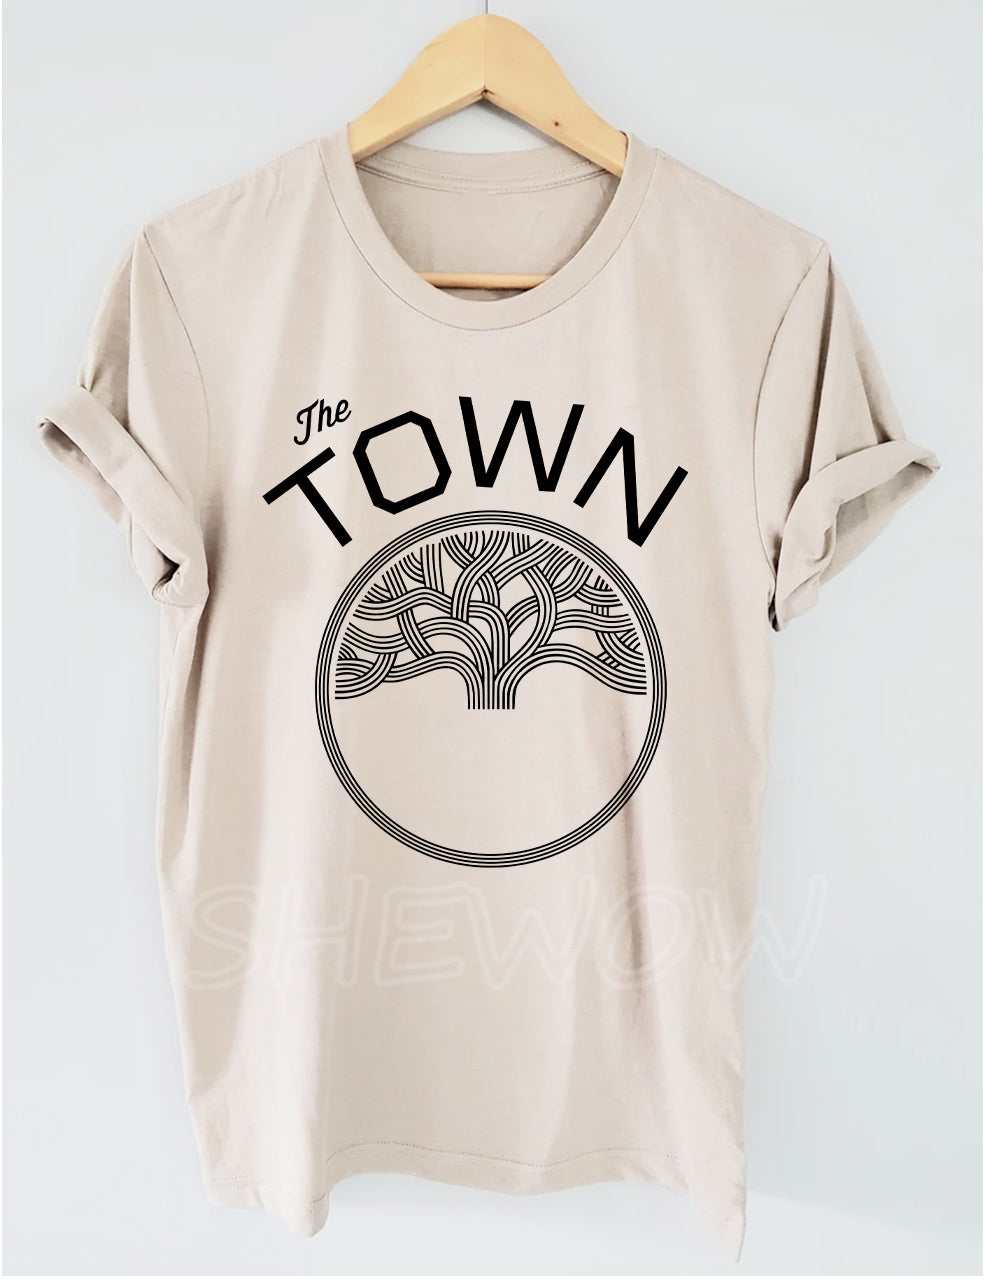 The Town Warriors T-shirt